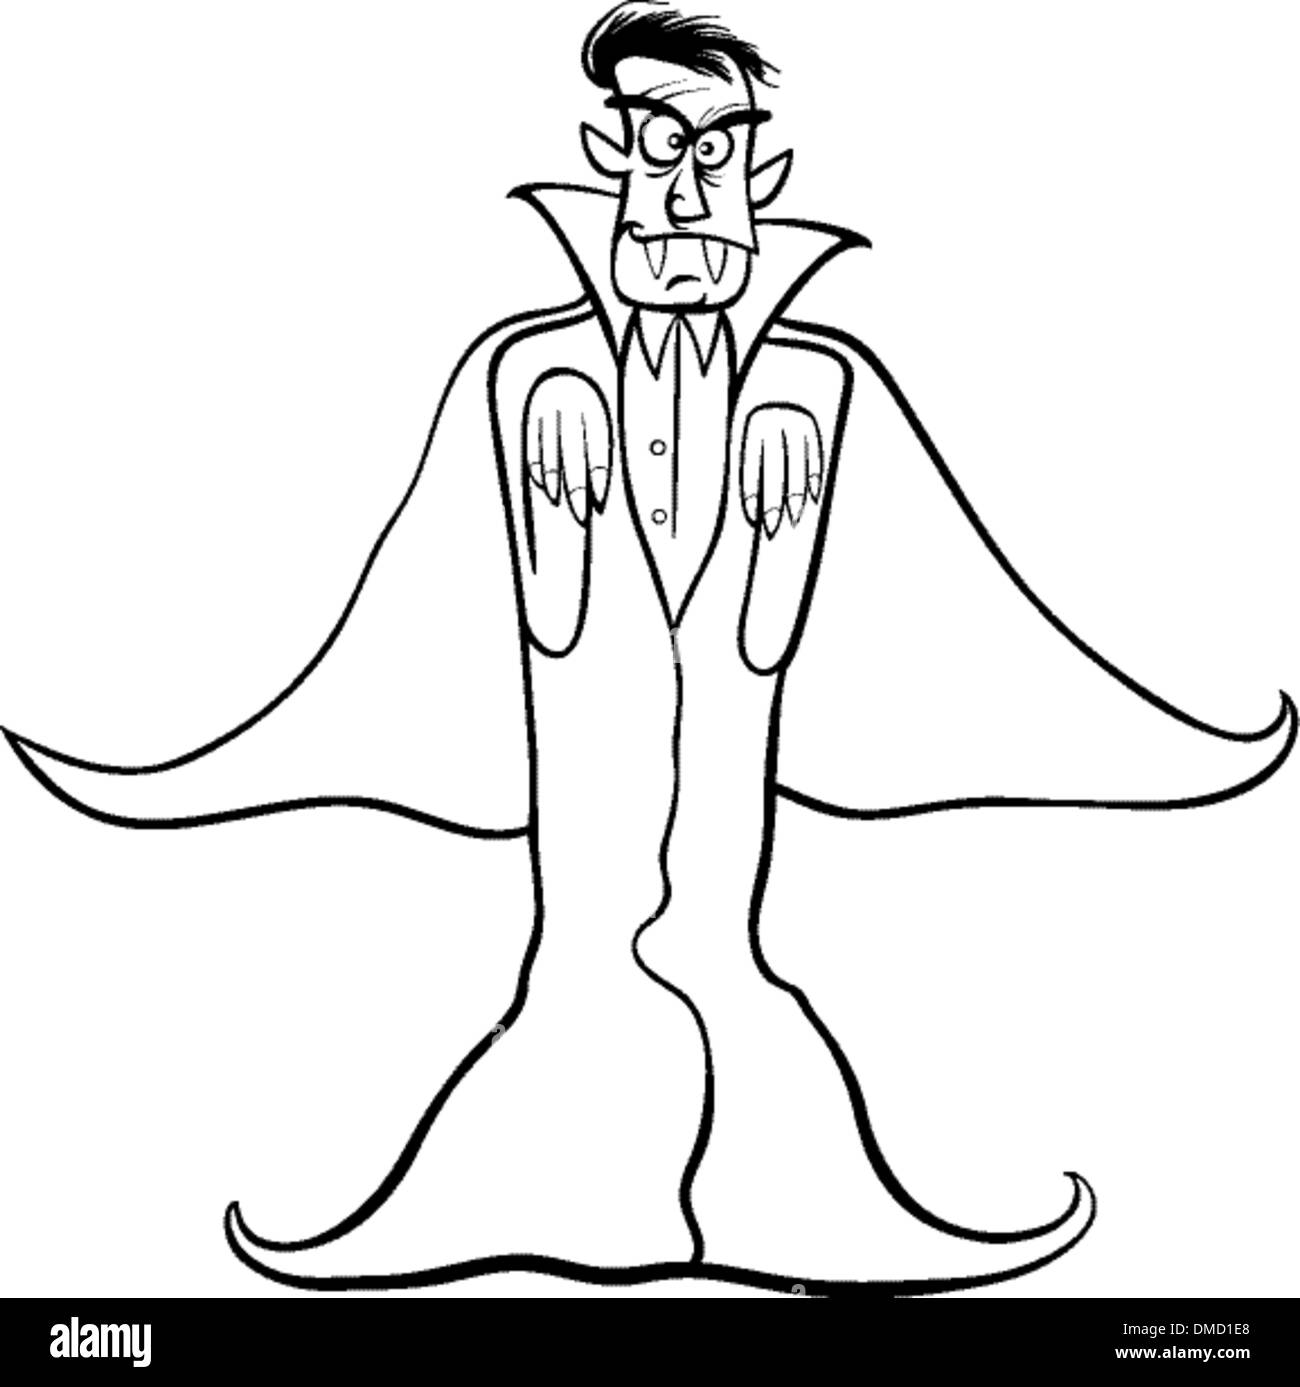 Dracula vampiro cartoon per libro da colorare Immagine e Vettoriale - Alamy